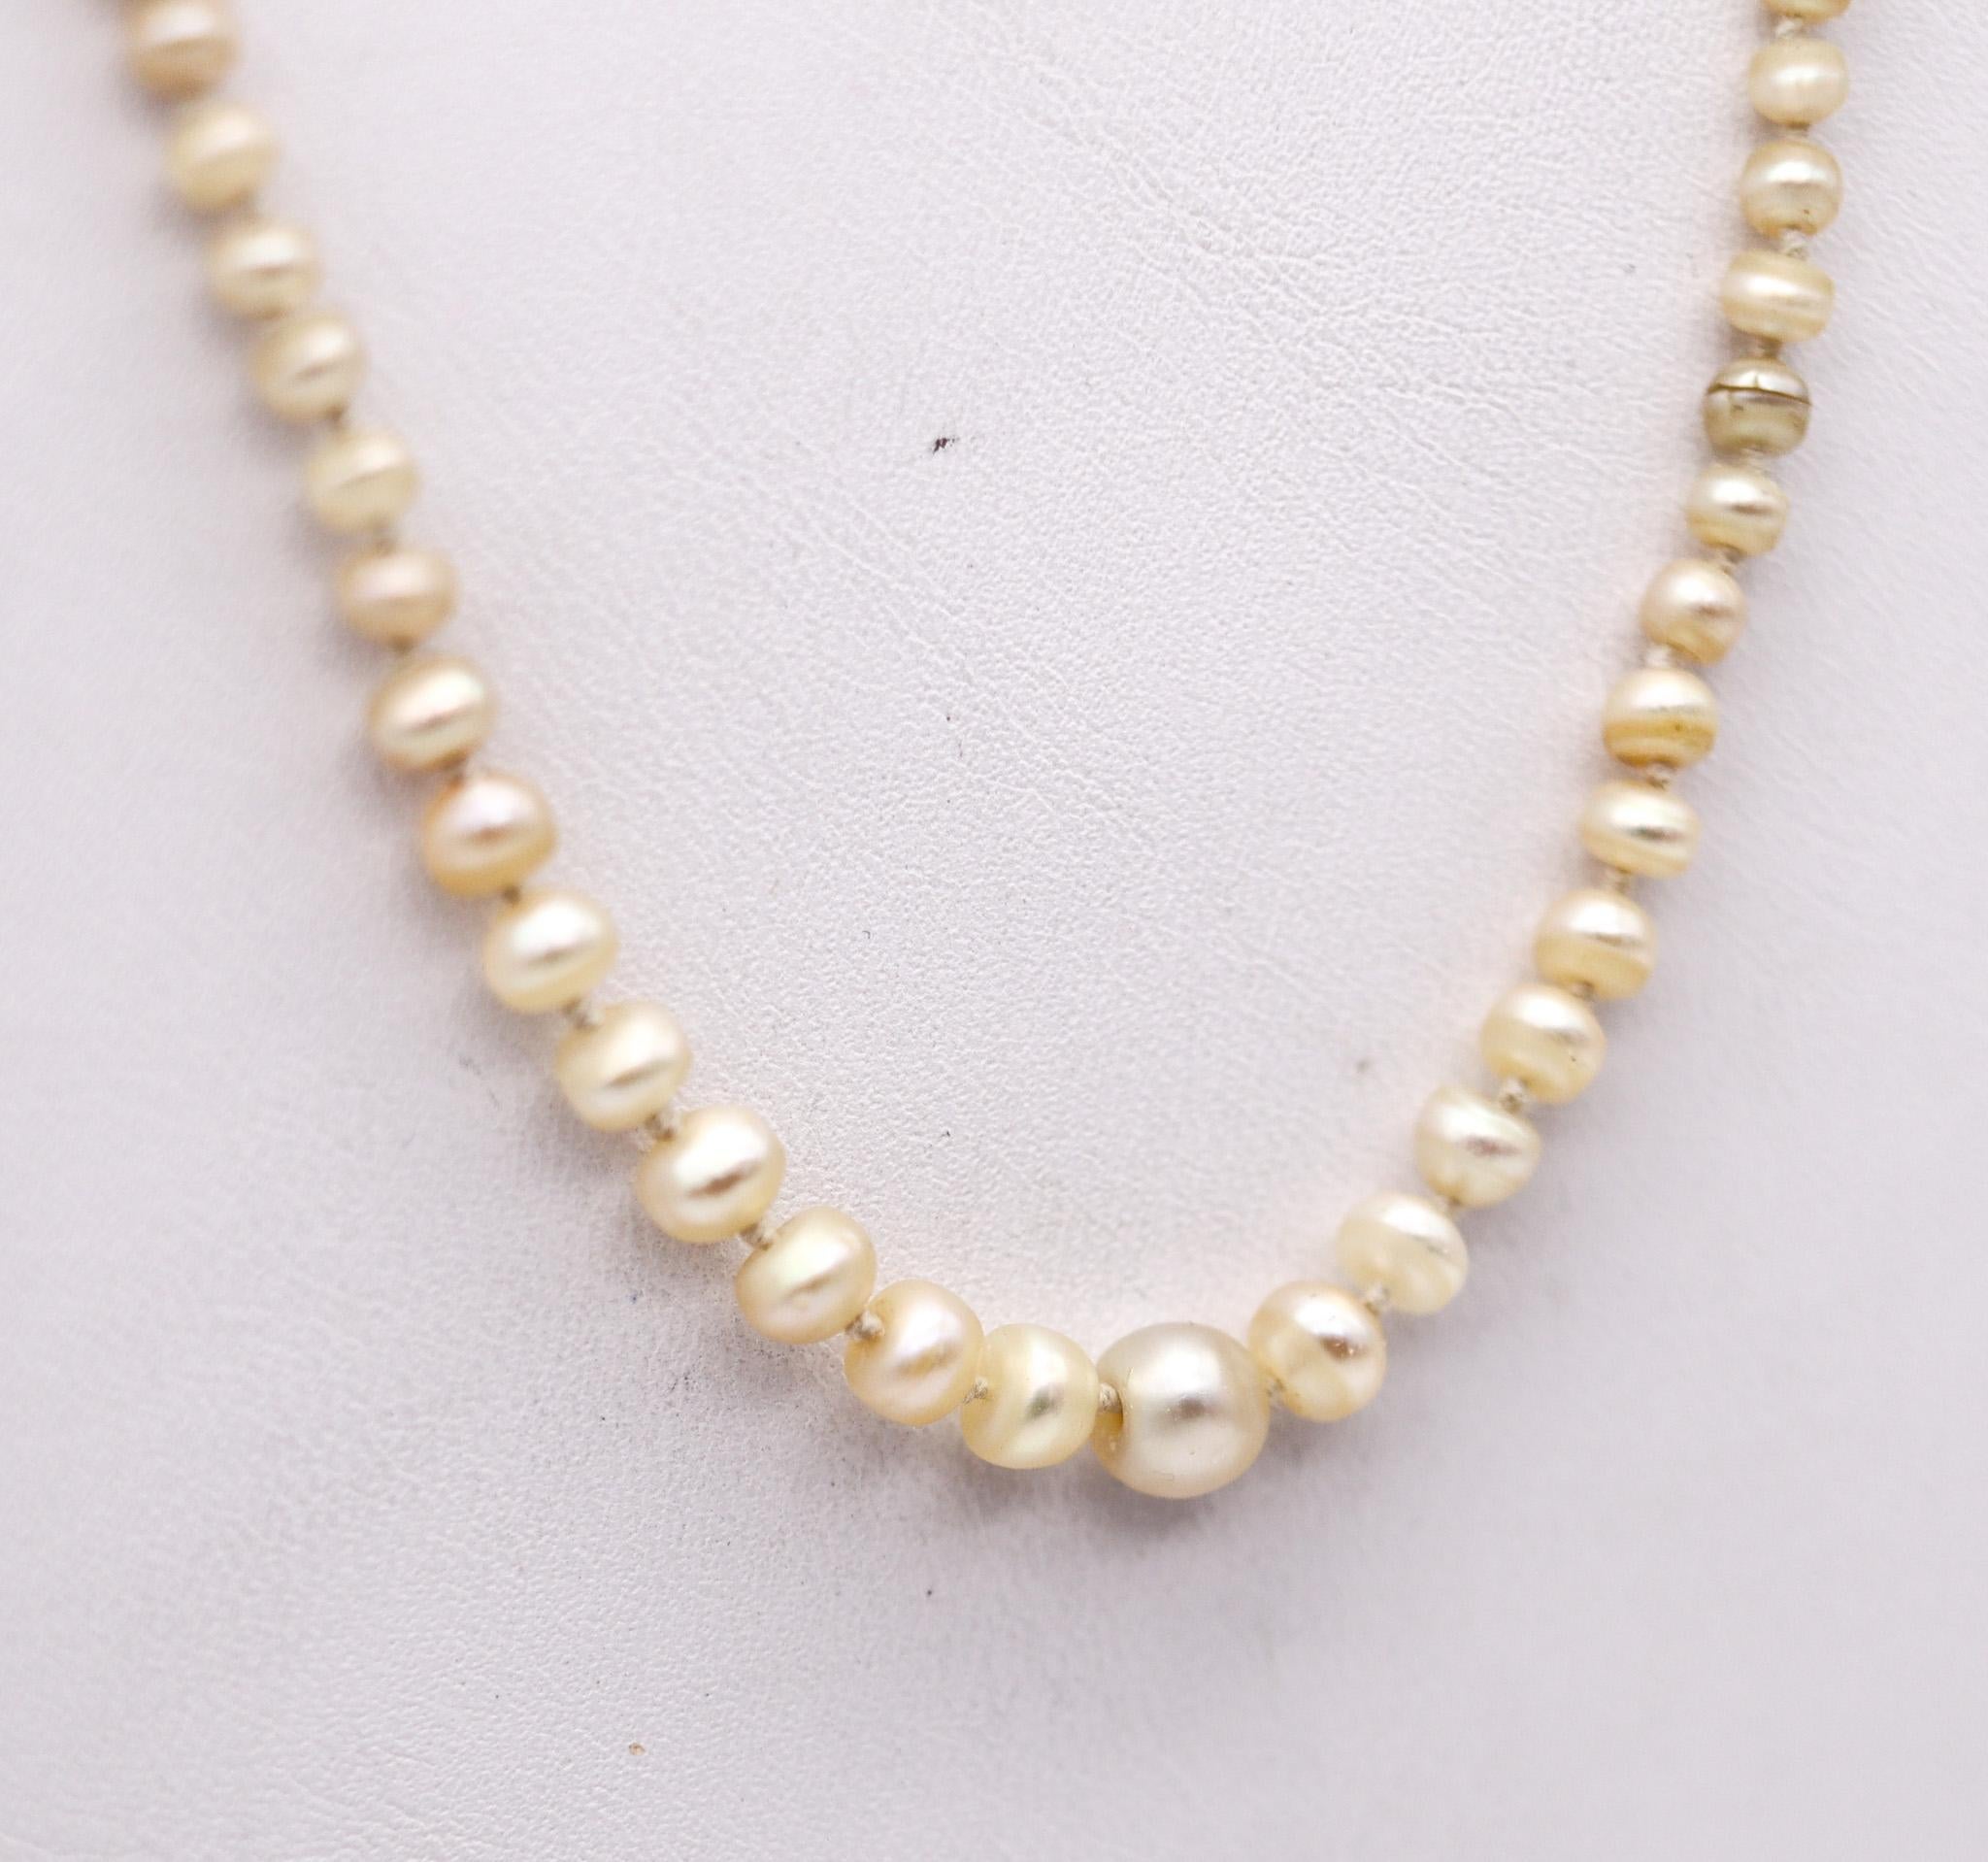 Collier de perles de la belle époque édouardienne.

Magnifique et très délicat collier, créé en Angleterre à la belle époque édouardienne, dans les années 1910. Ce collier est composé d'un rang noué de cent vingt perles et d'un fermoir rond de